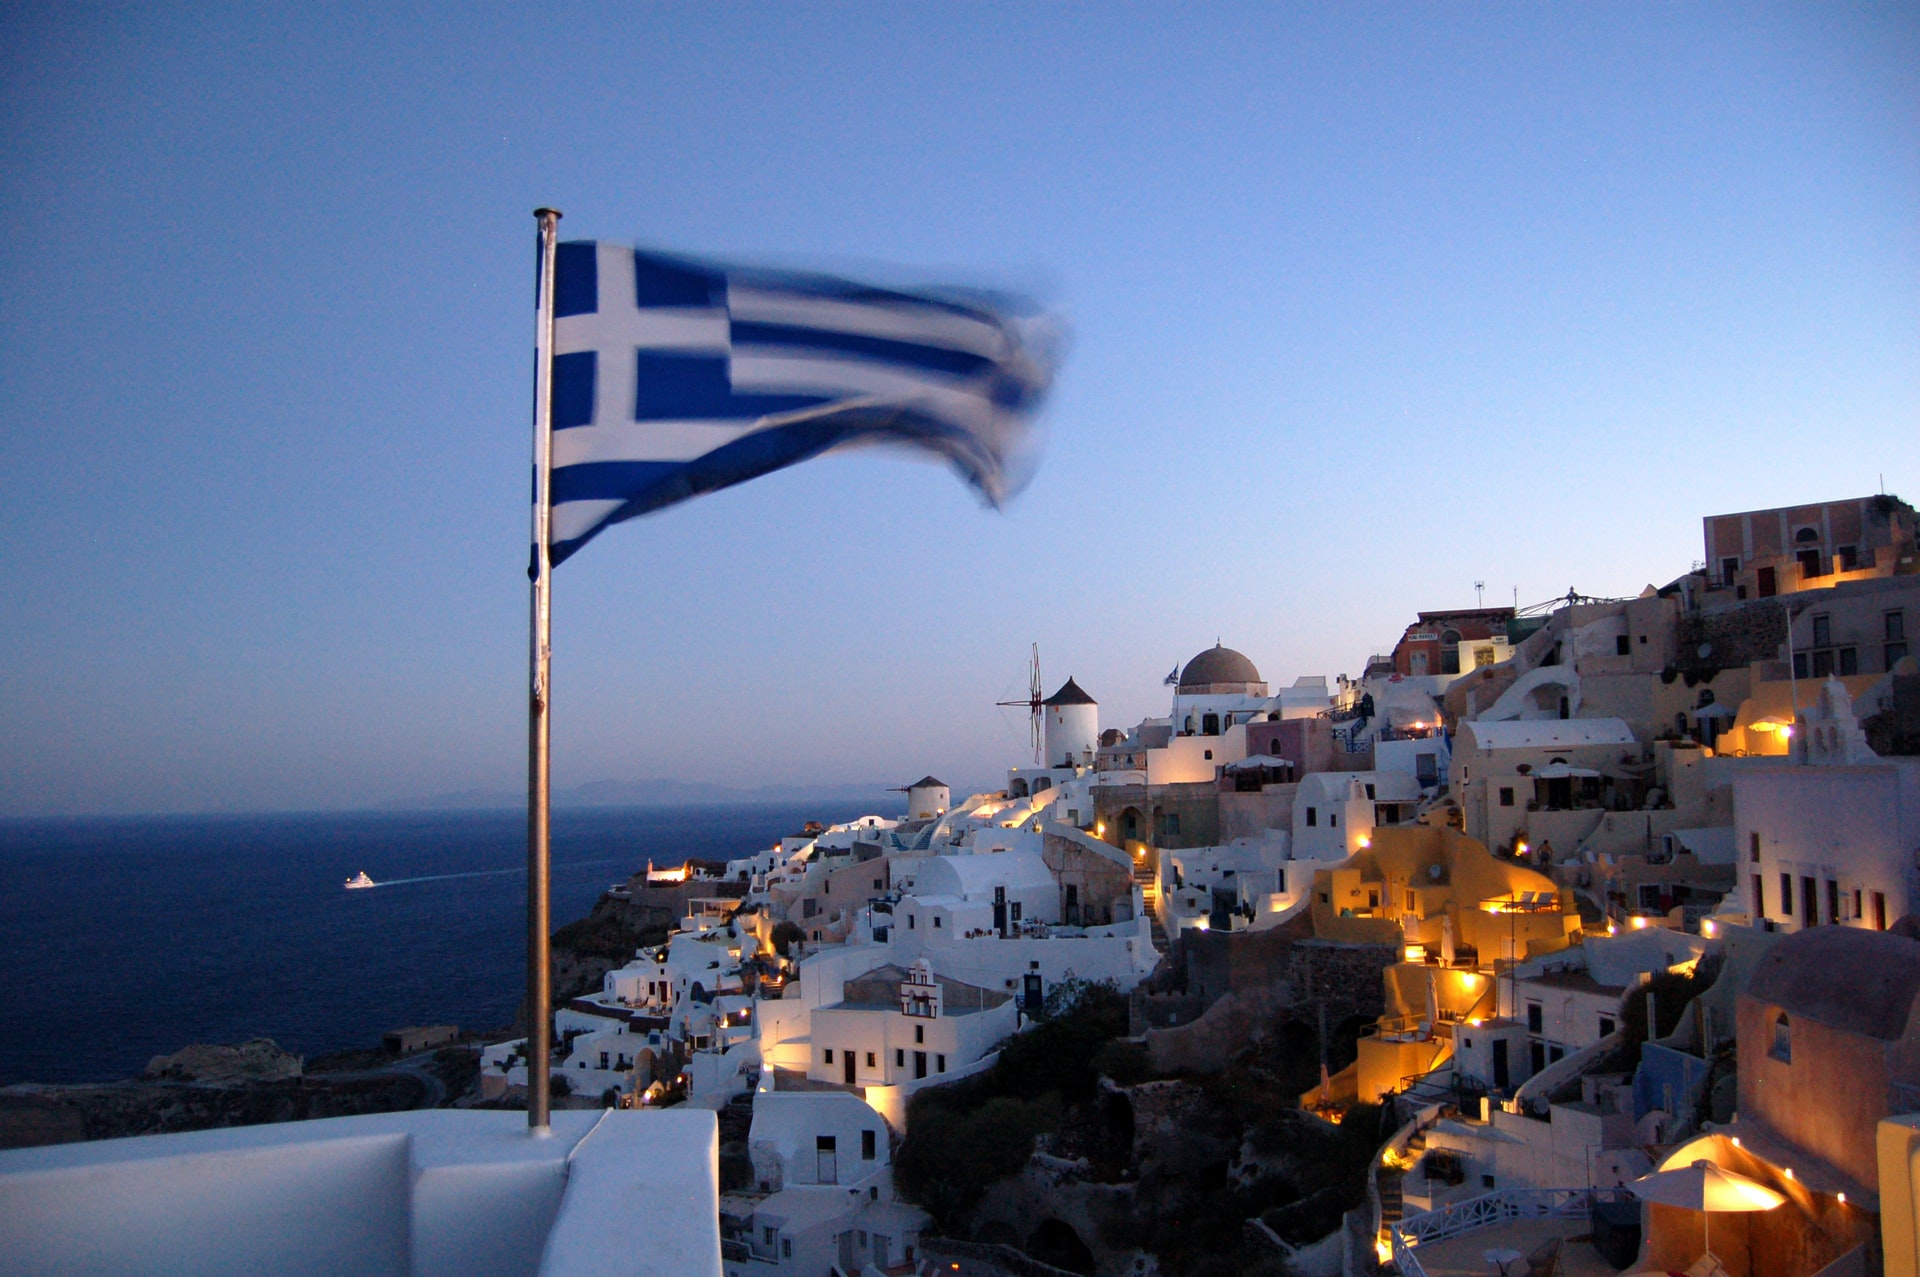 Turiştii care merg în Grecia vor plăti o suprataxă de 20 de euro